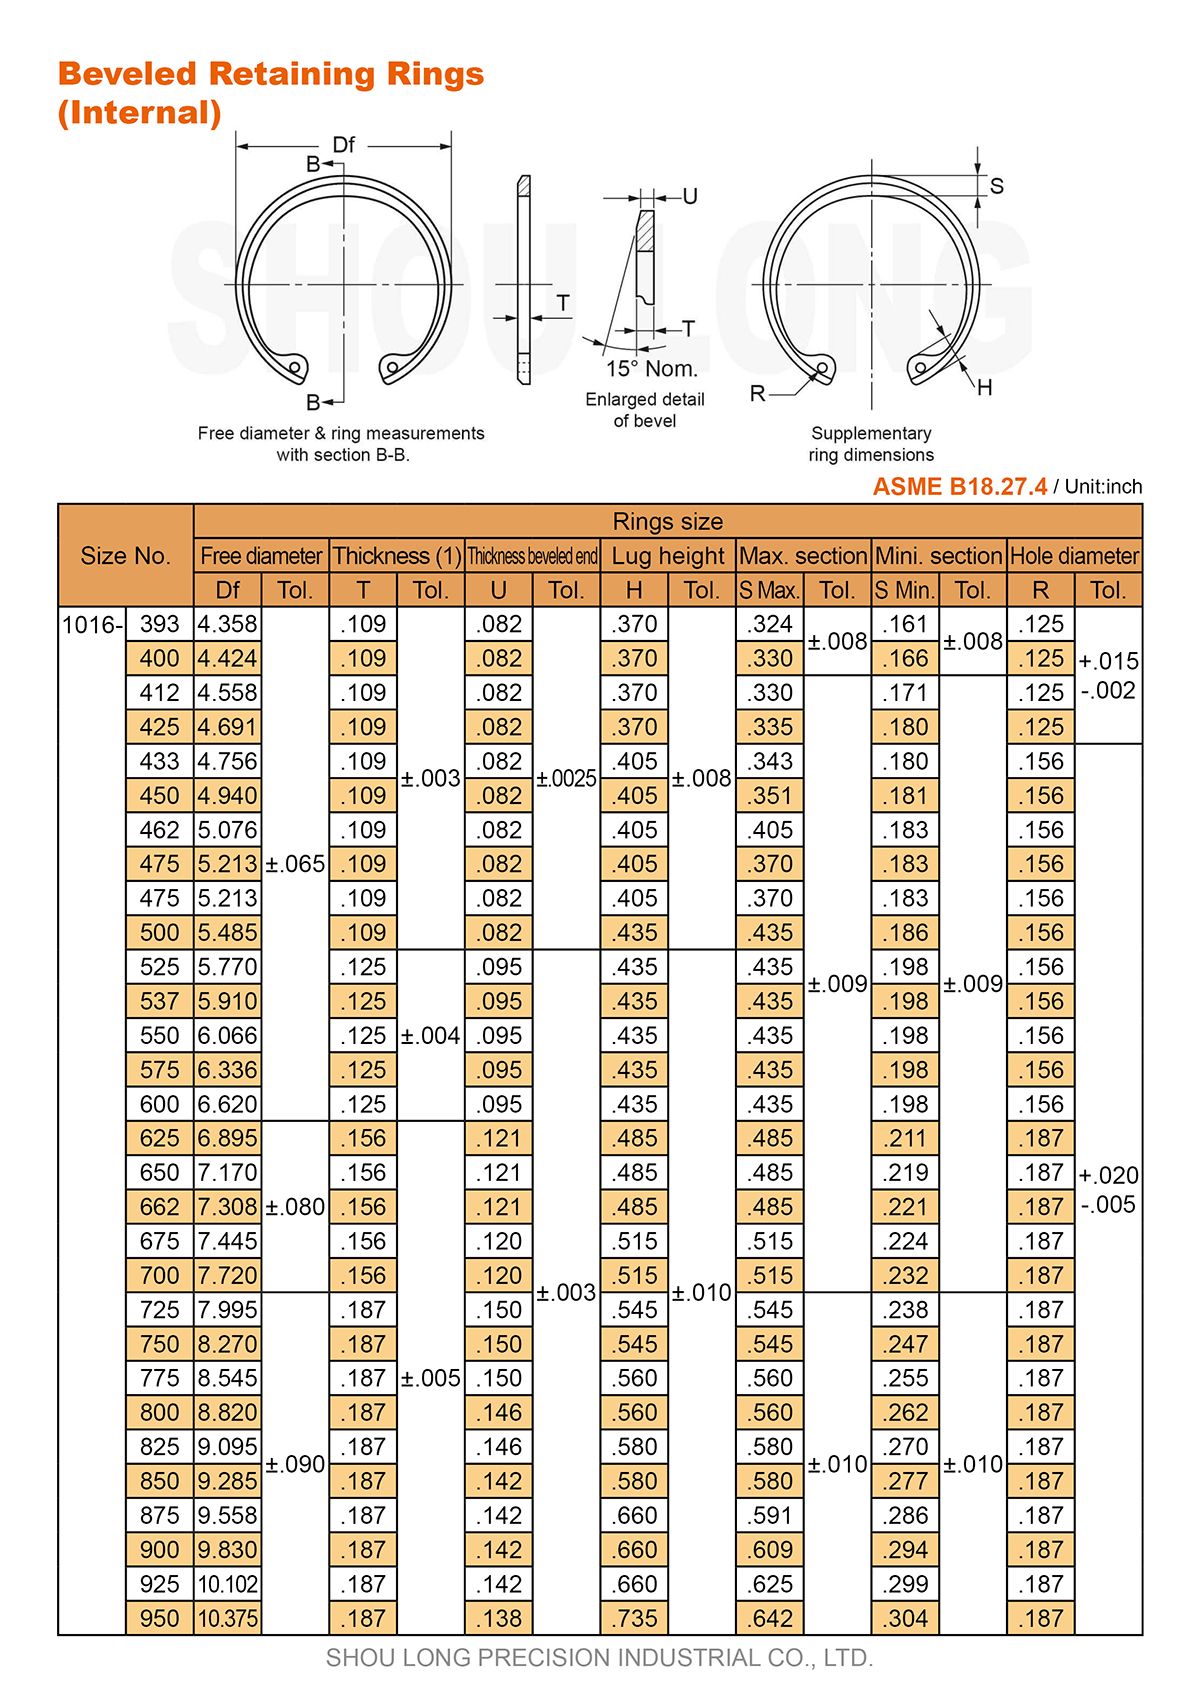 Especificação de Anéis de Retenção Biselados em Polegadas para Furos ASME/ANSI B18.27.4-3